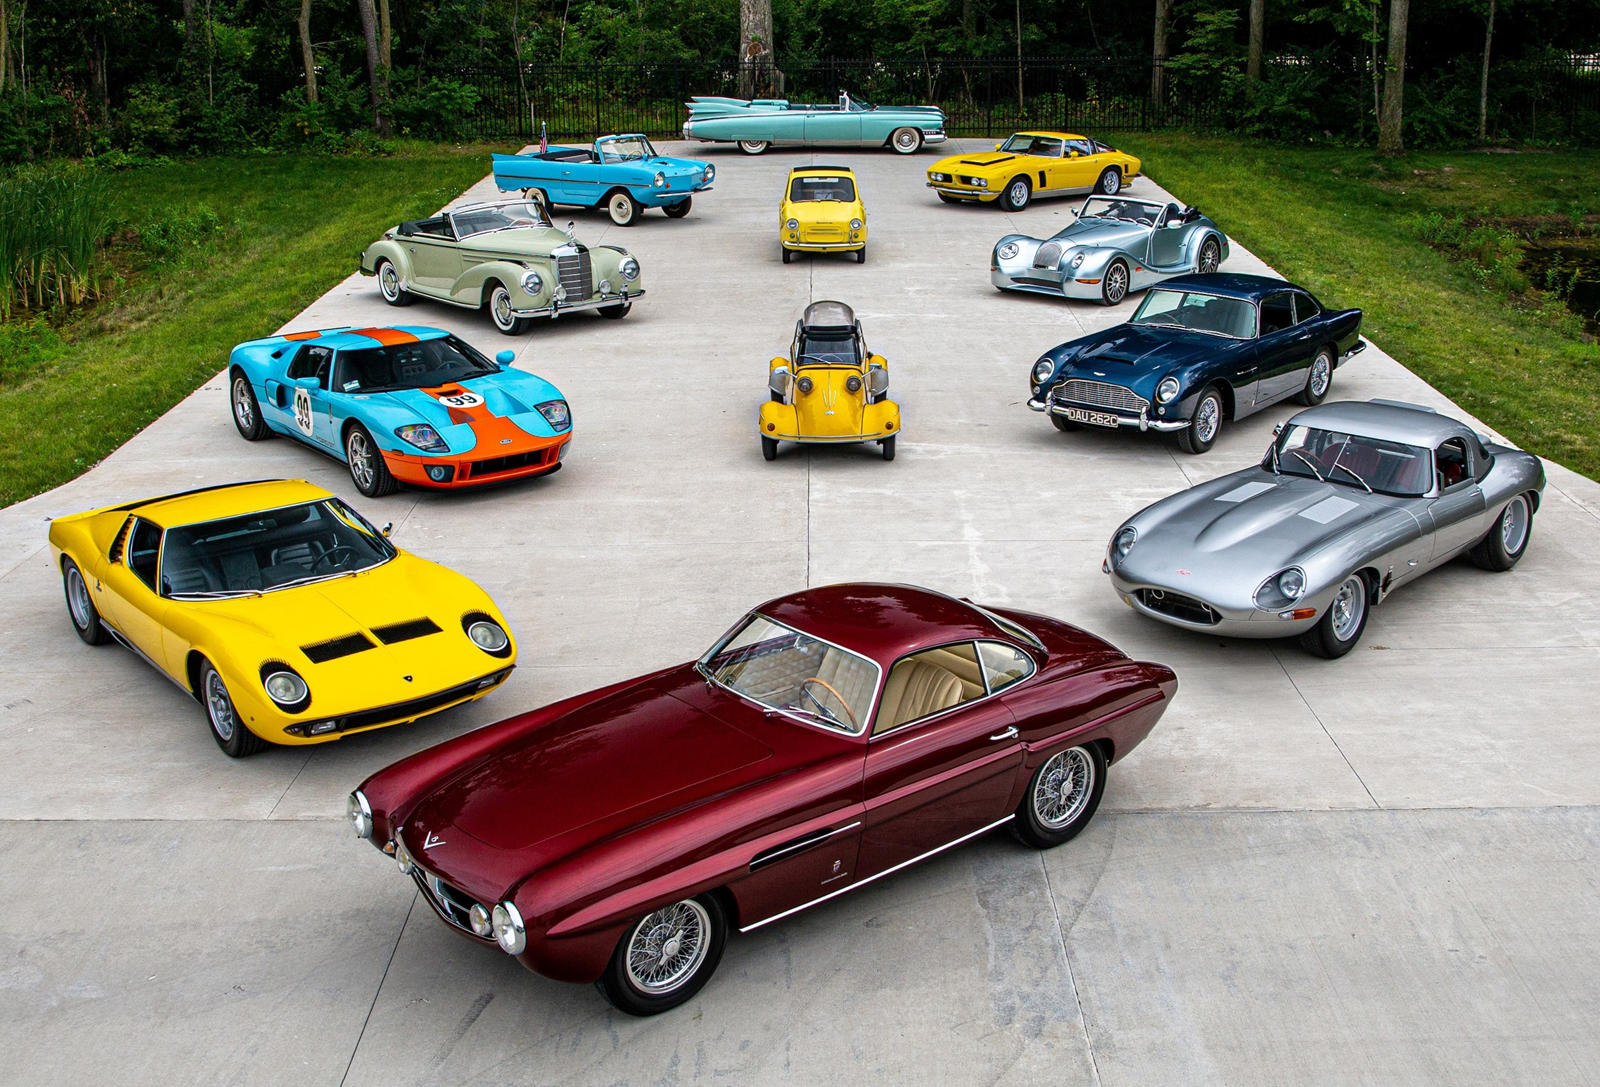 Из коллекции более восьми автомобилей было продано за более чем 1 млн долларов. Одним из звездных автомобилей аукциона был чрезвычайно редкий Ferrari 225 S Berlinetta 1952 года от Vignale, проданный за 2 810 000 долларов. Будучи пятой из 21 построенн